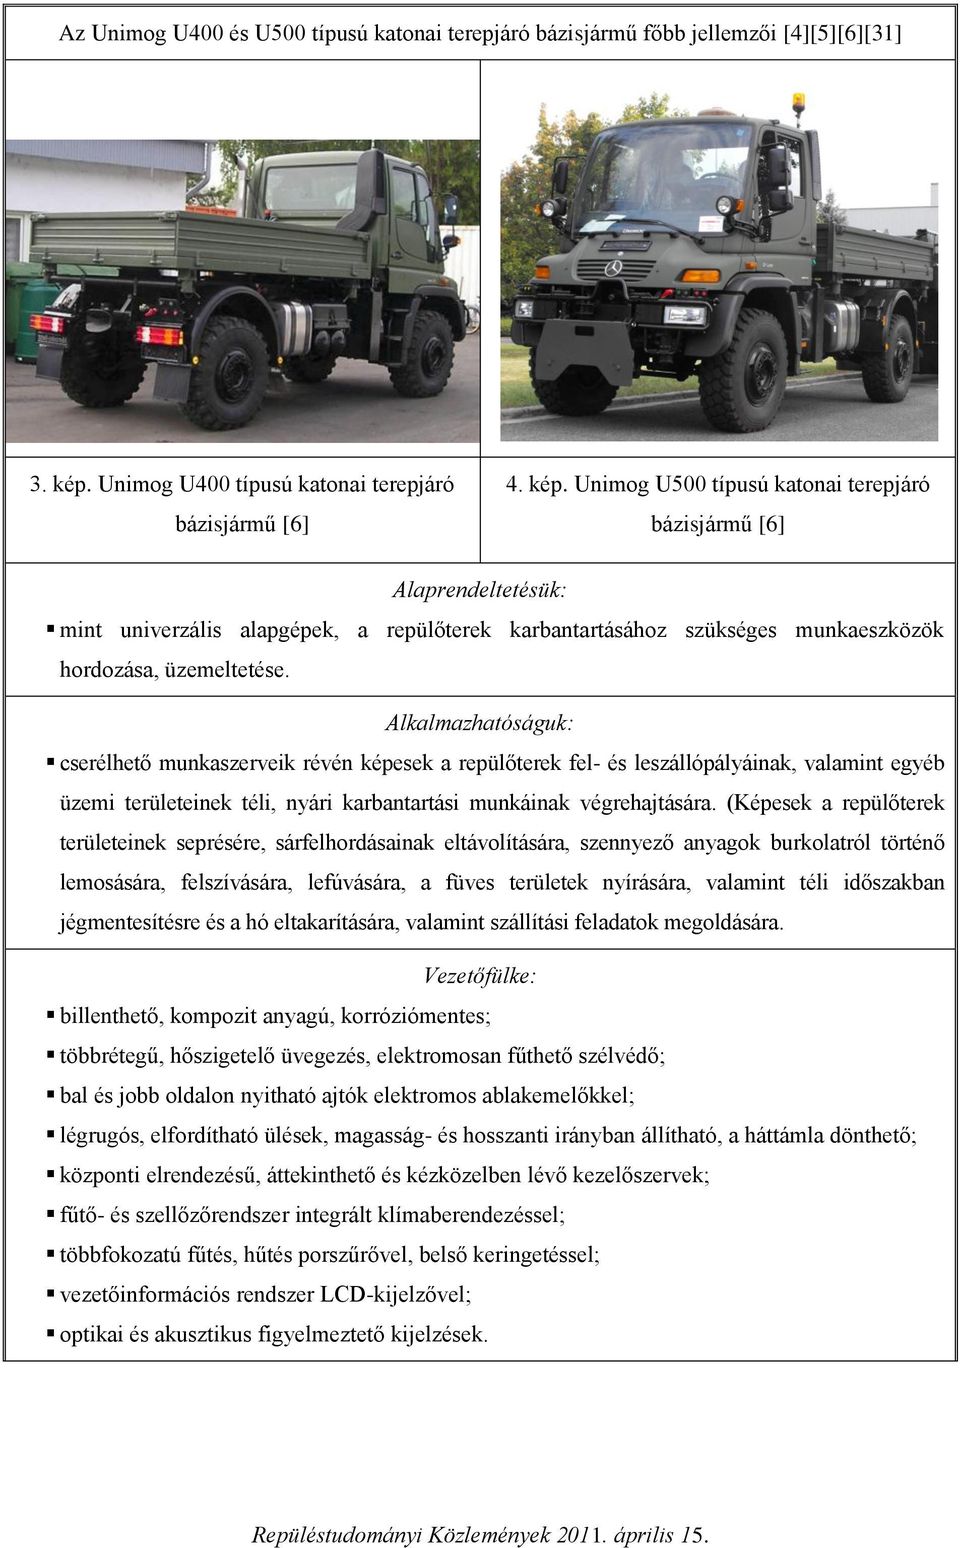 Unimog U500 típusú katonai terepjáró bázisjármű [6] Alaprendeltetésük: mint univerzális alapgépek, a repülőterek karbantartásához szükséges munkaeszközök hordozása, üzemeltetése.